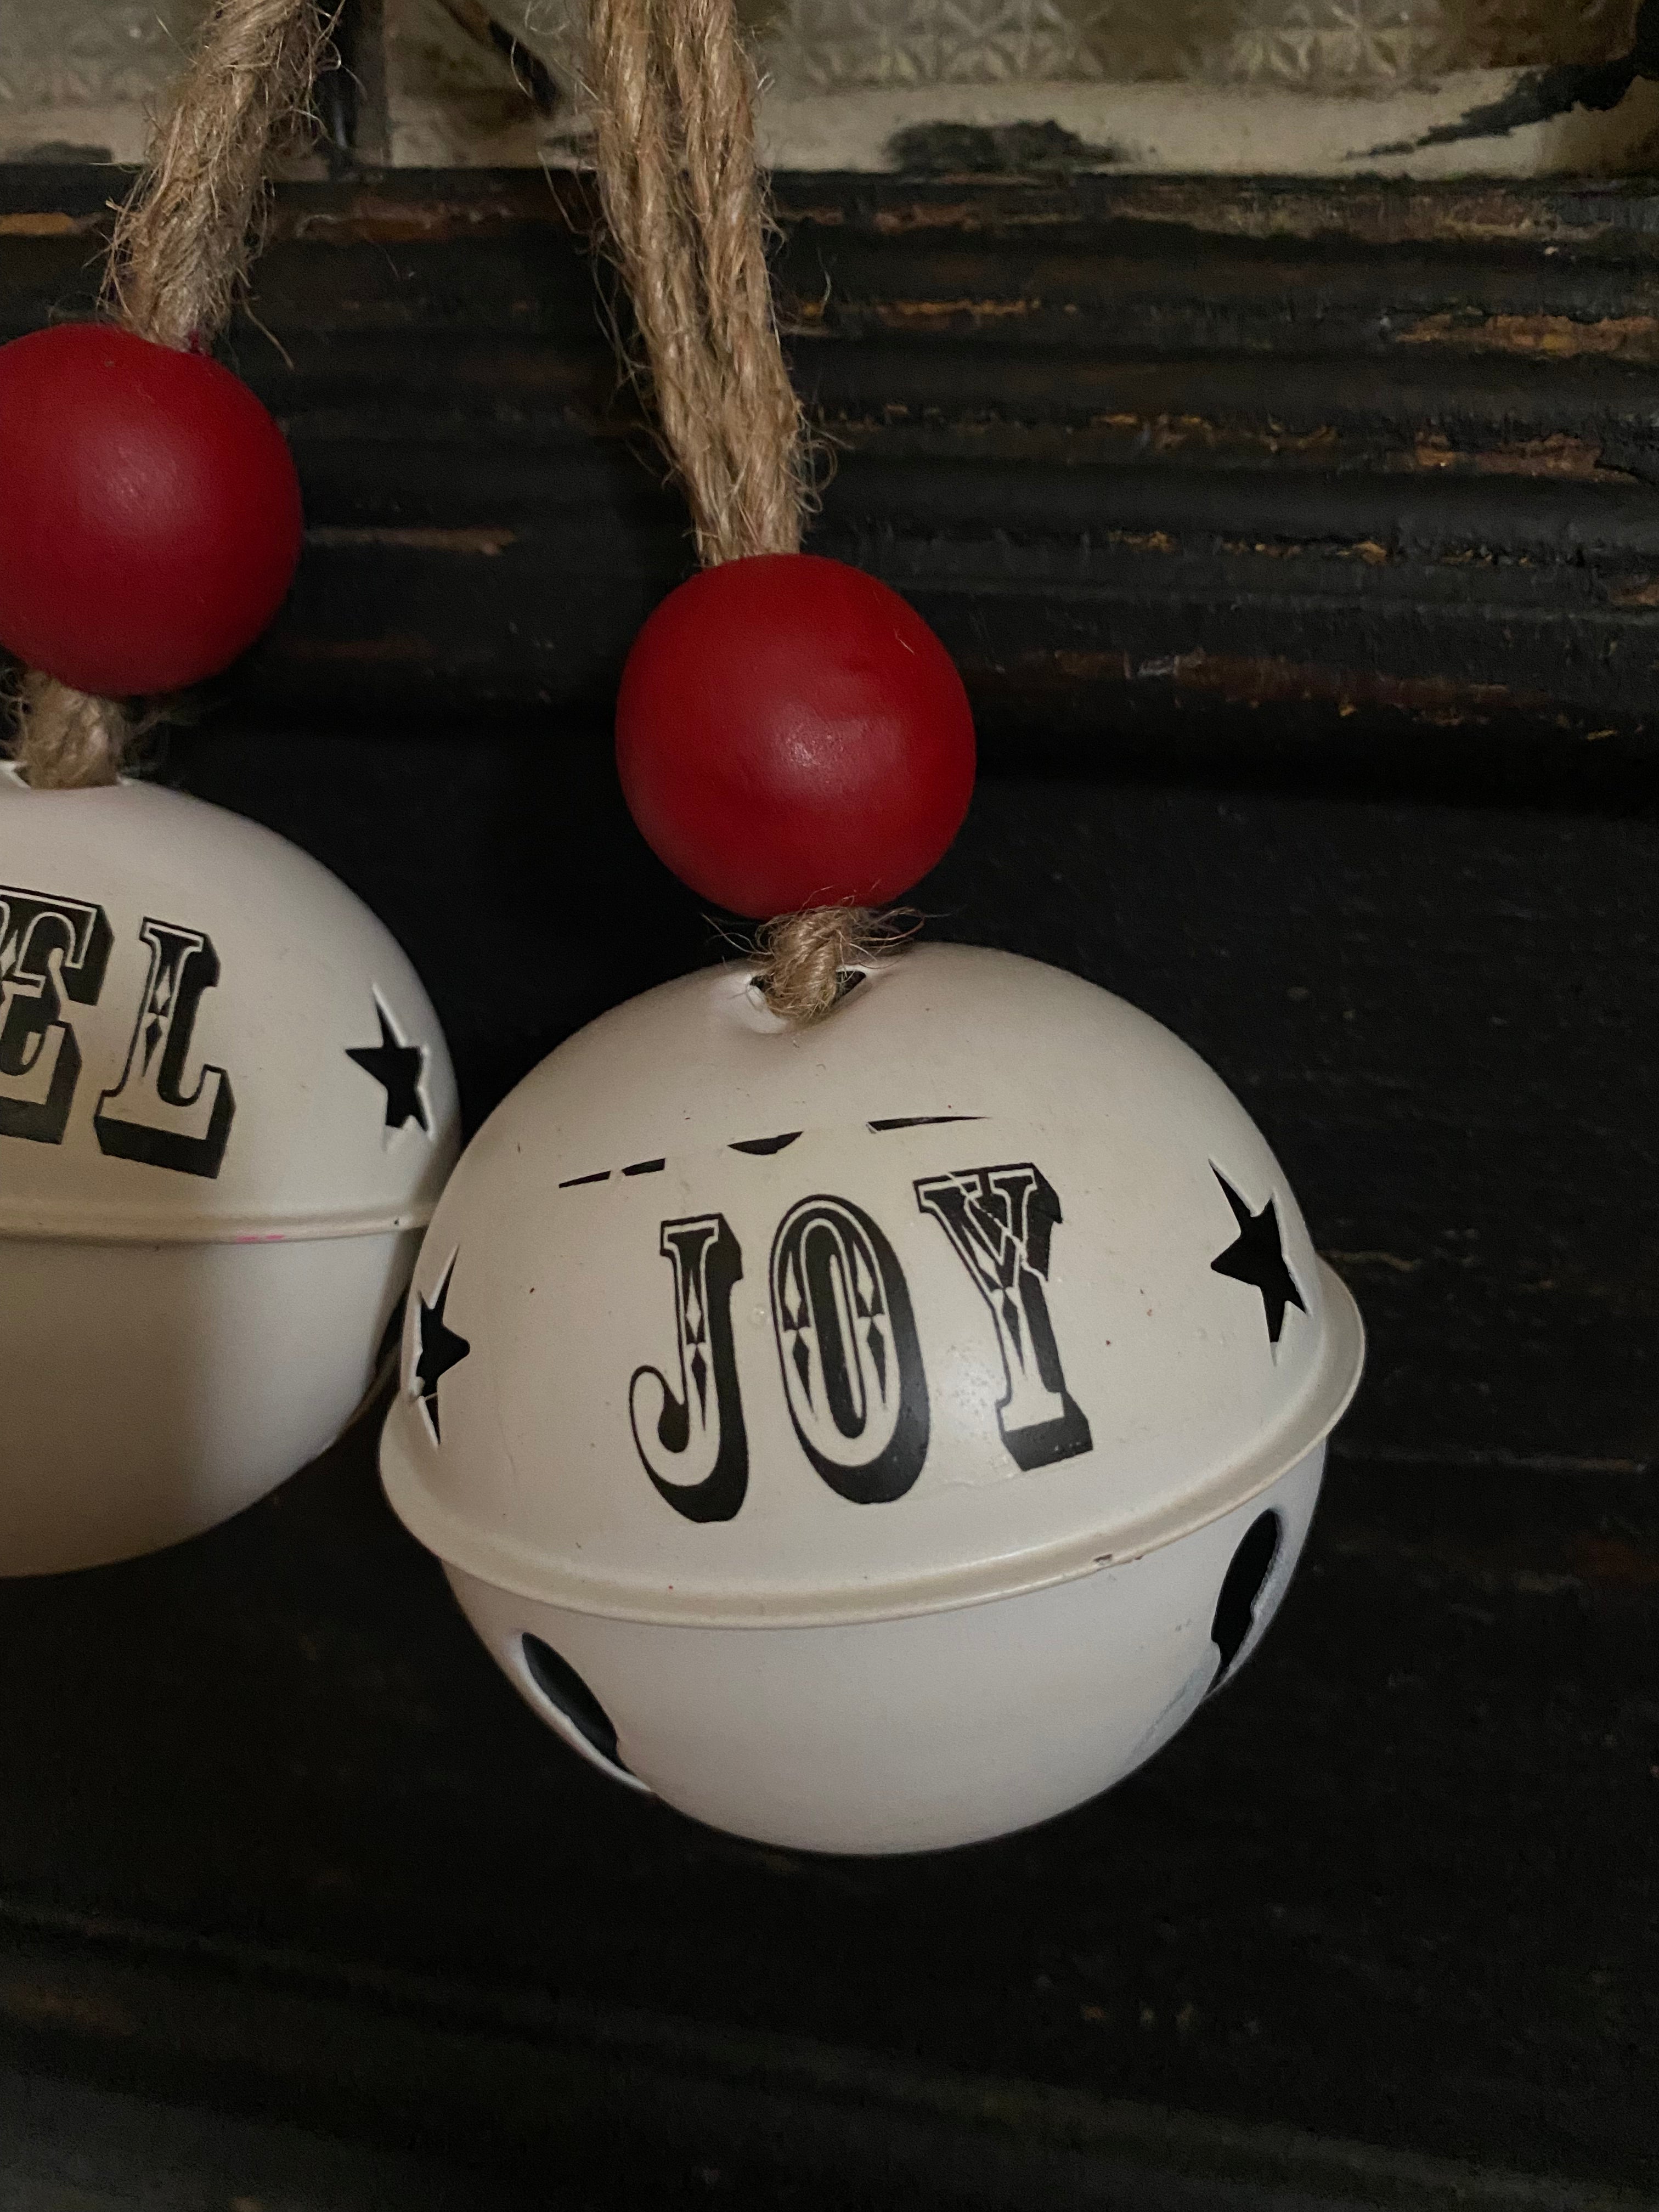 Kerst bellen 'Noel' - 'Hope' - 'Joy' - Brocante bij Ingie